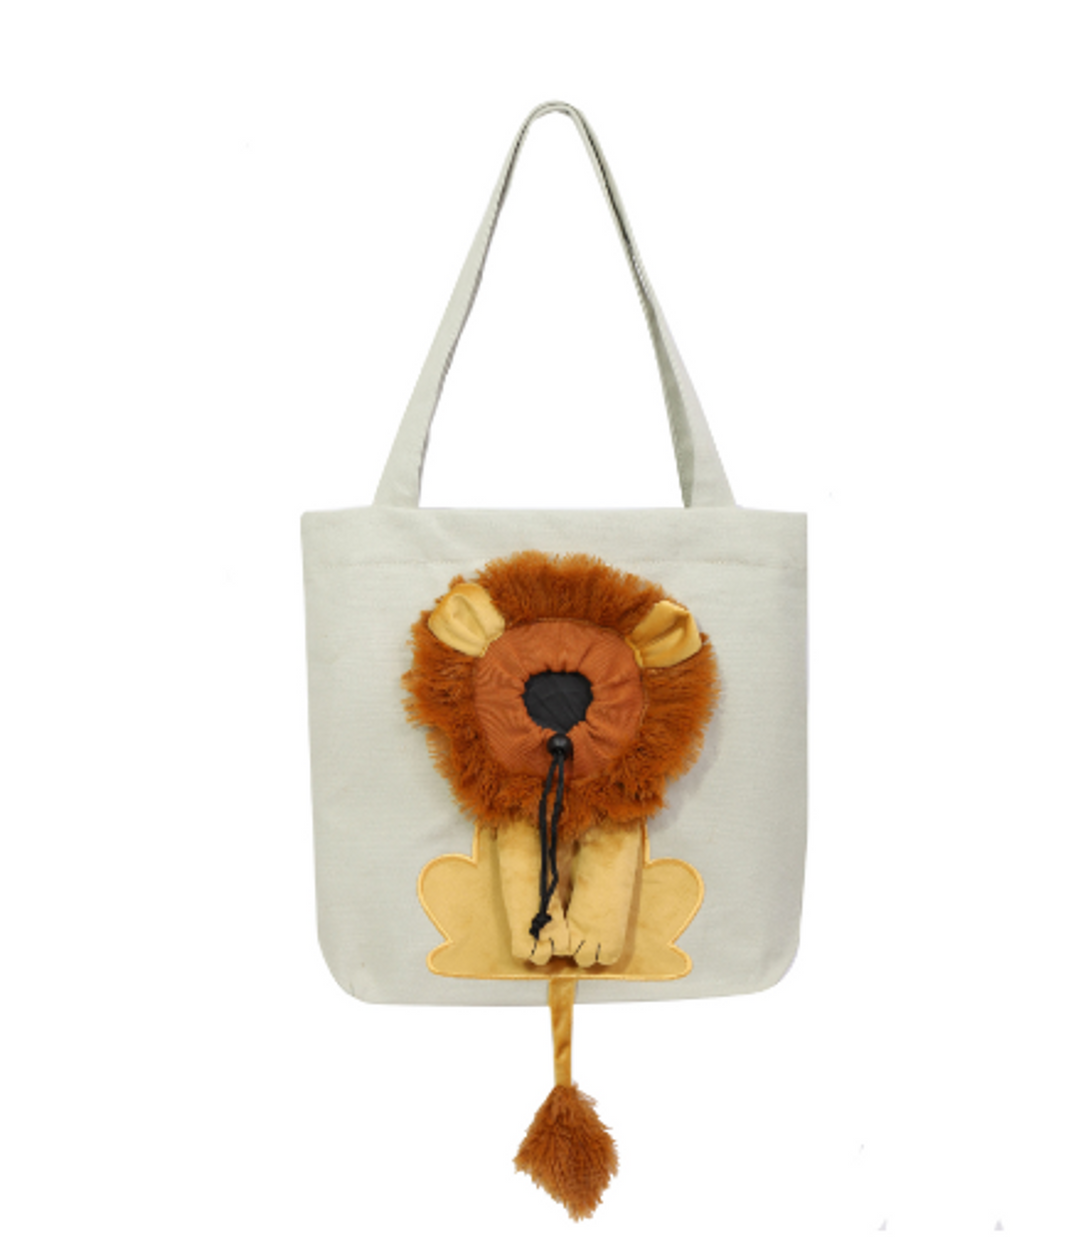 Soft Pet Carriers Lion Design Portable Breathable Bag